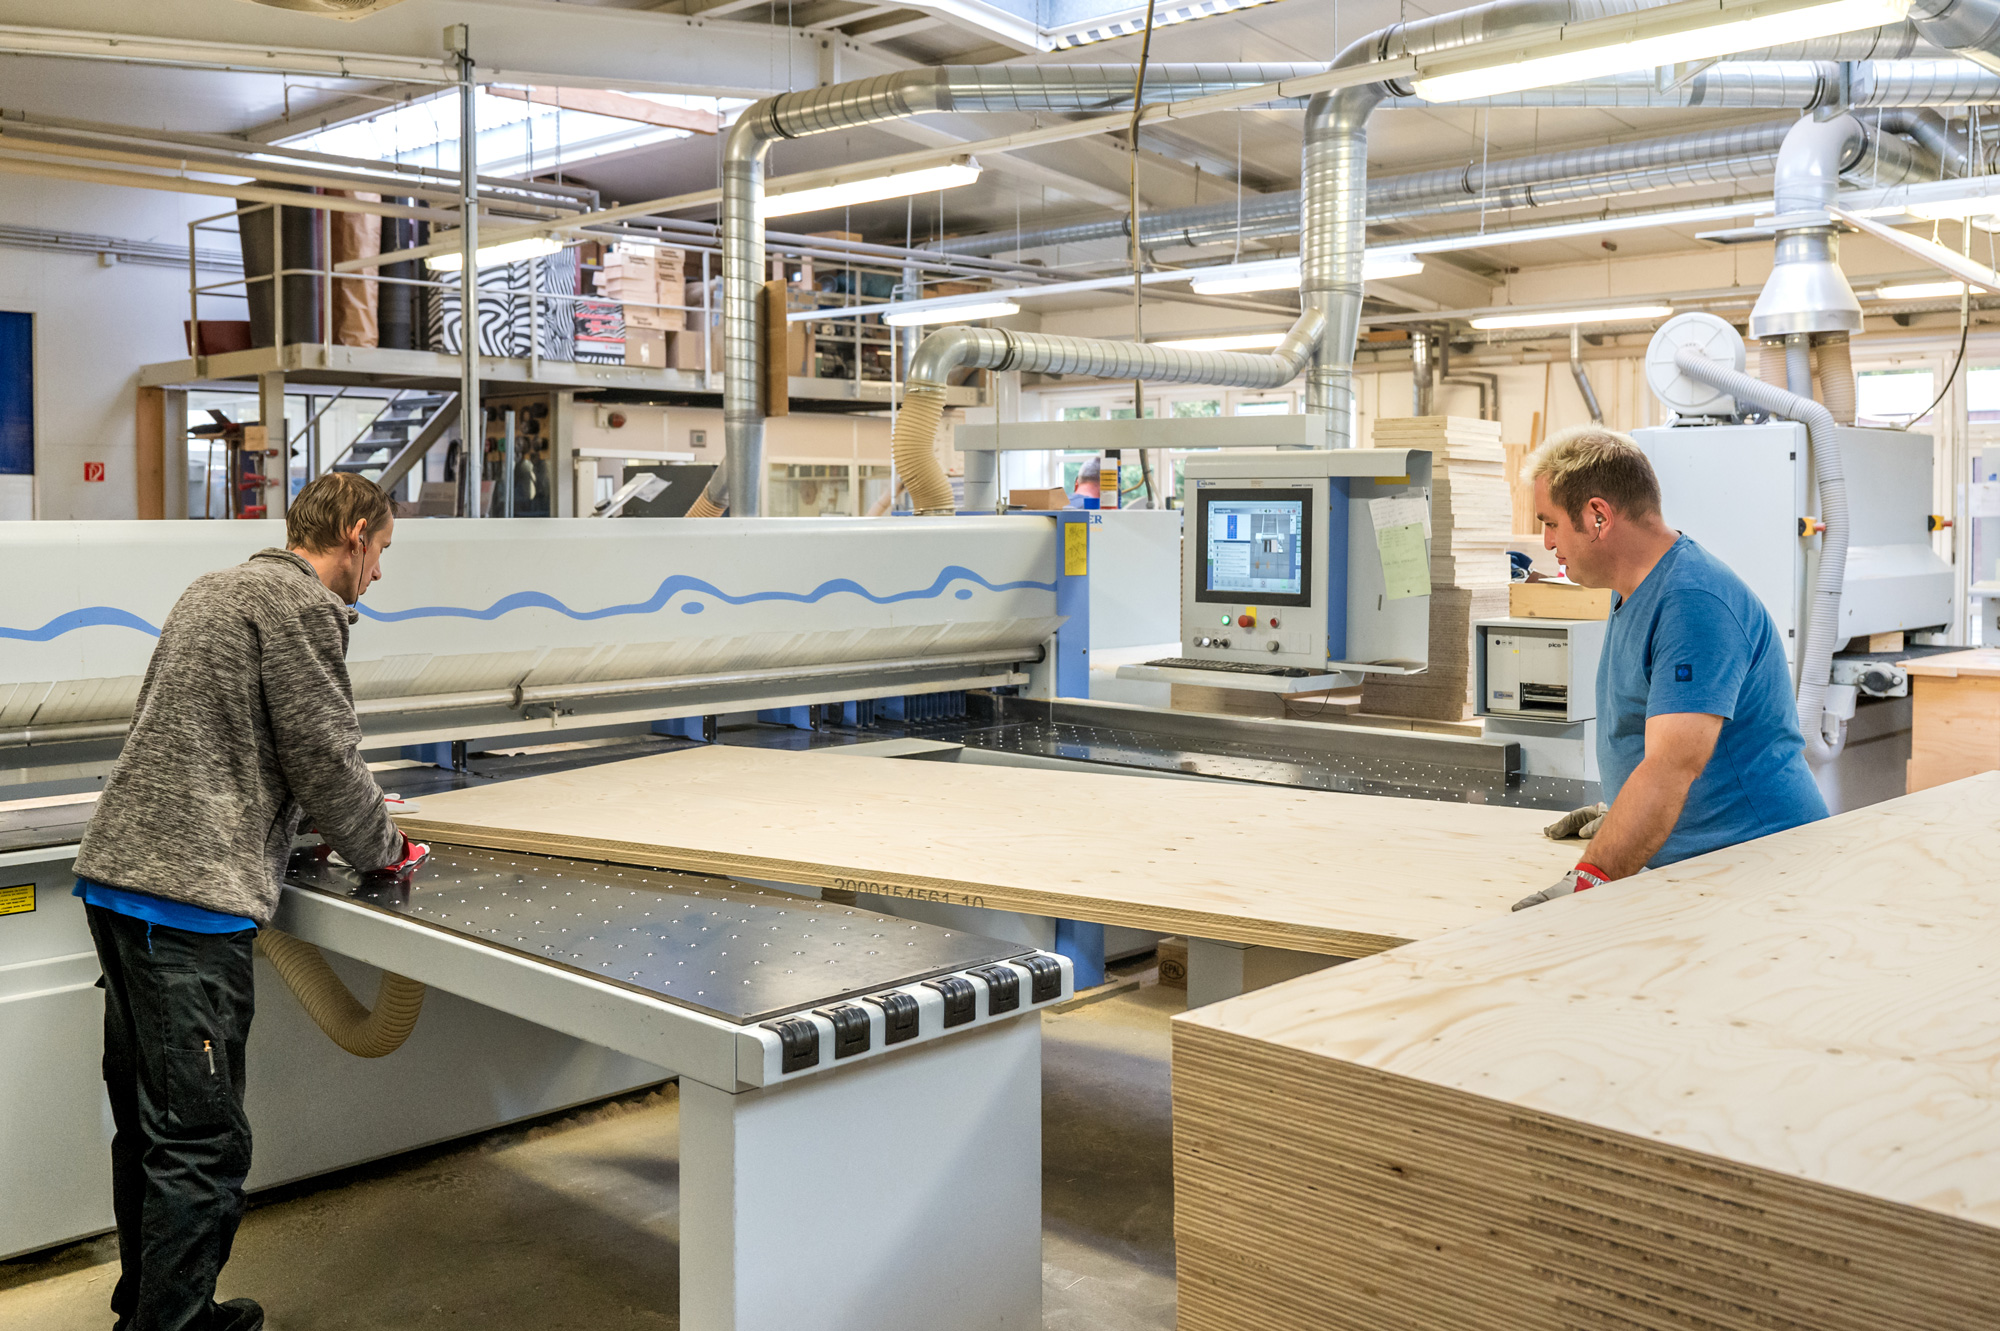 Zwei Mitarbeitende der Werkstatt verarbeiten an einer hochmodernen Plattensäge ein große Holzplatte